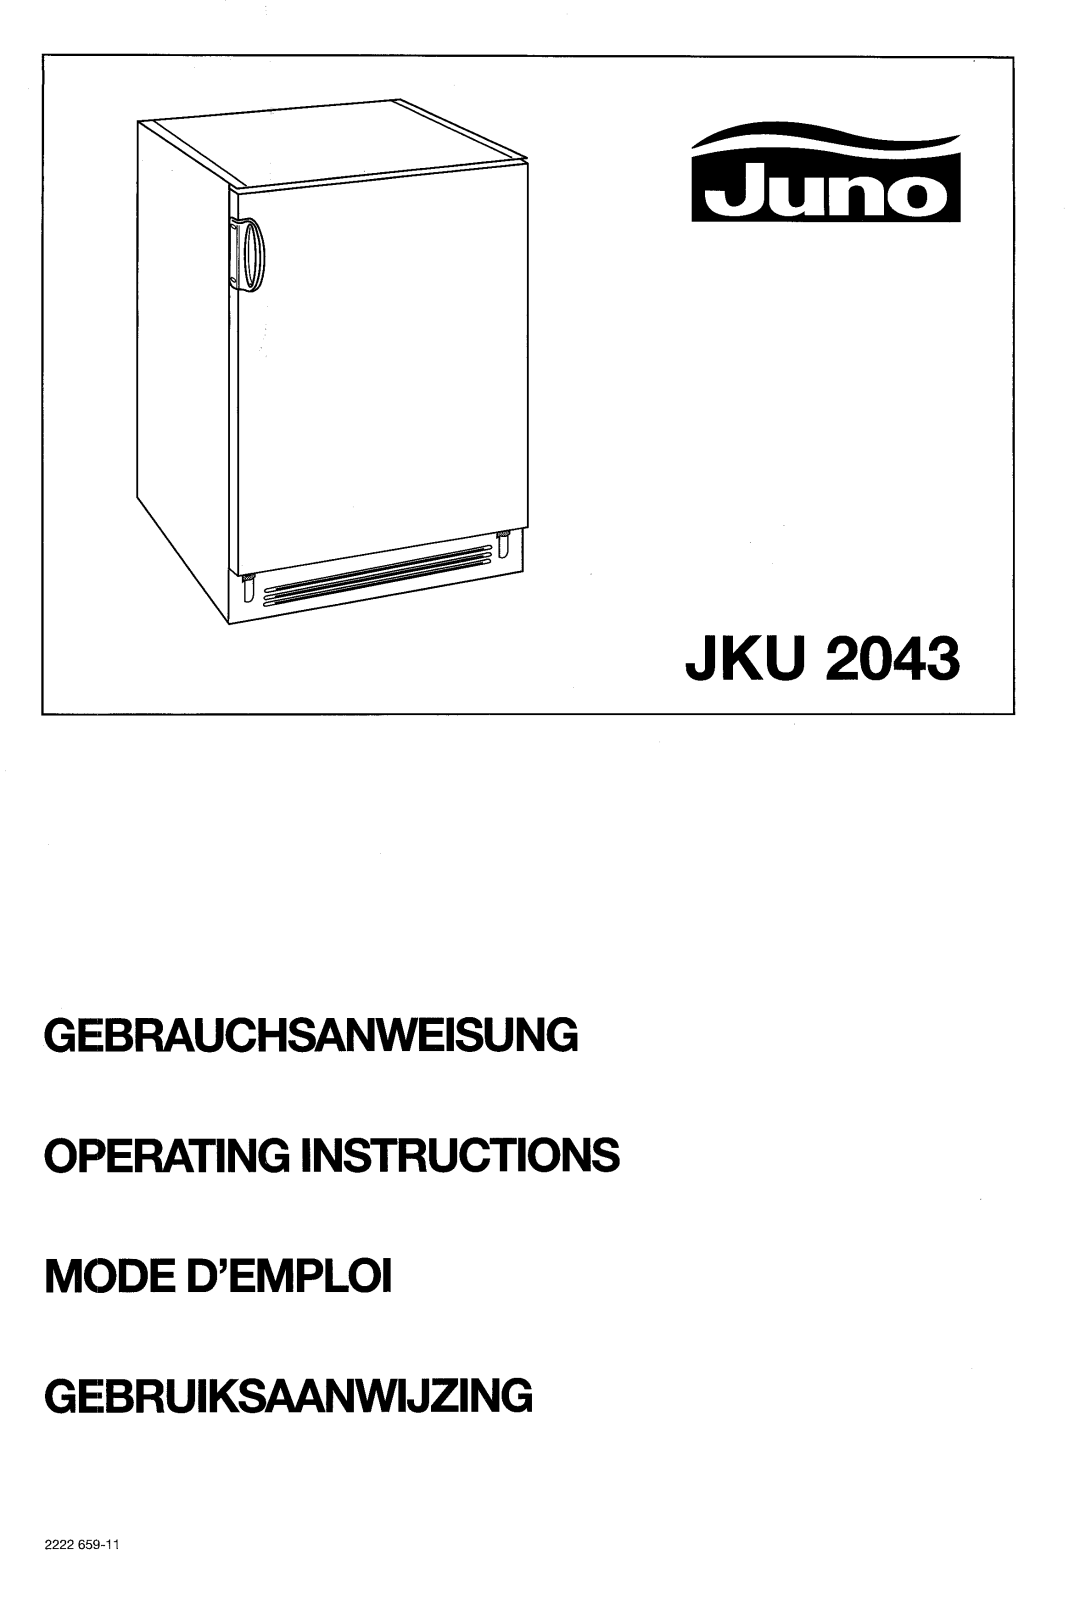 Juno JKU2043 User Manual